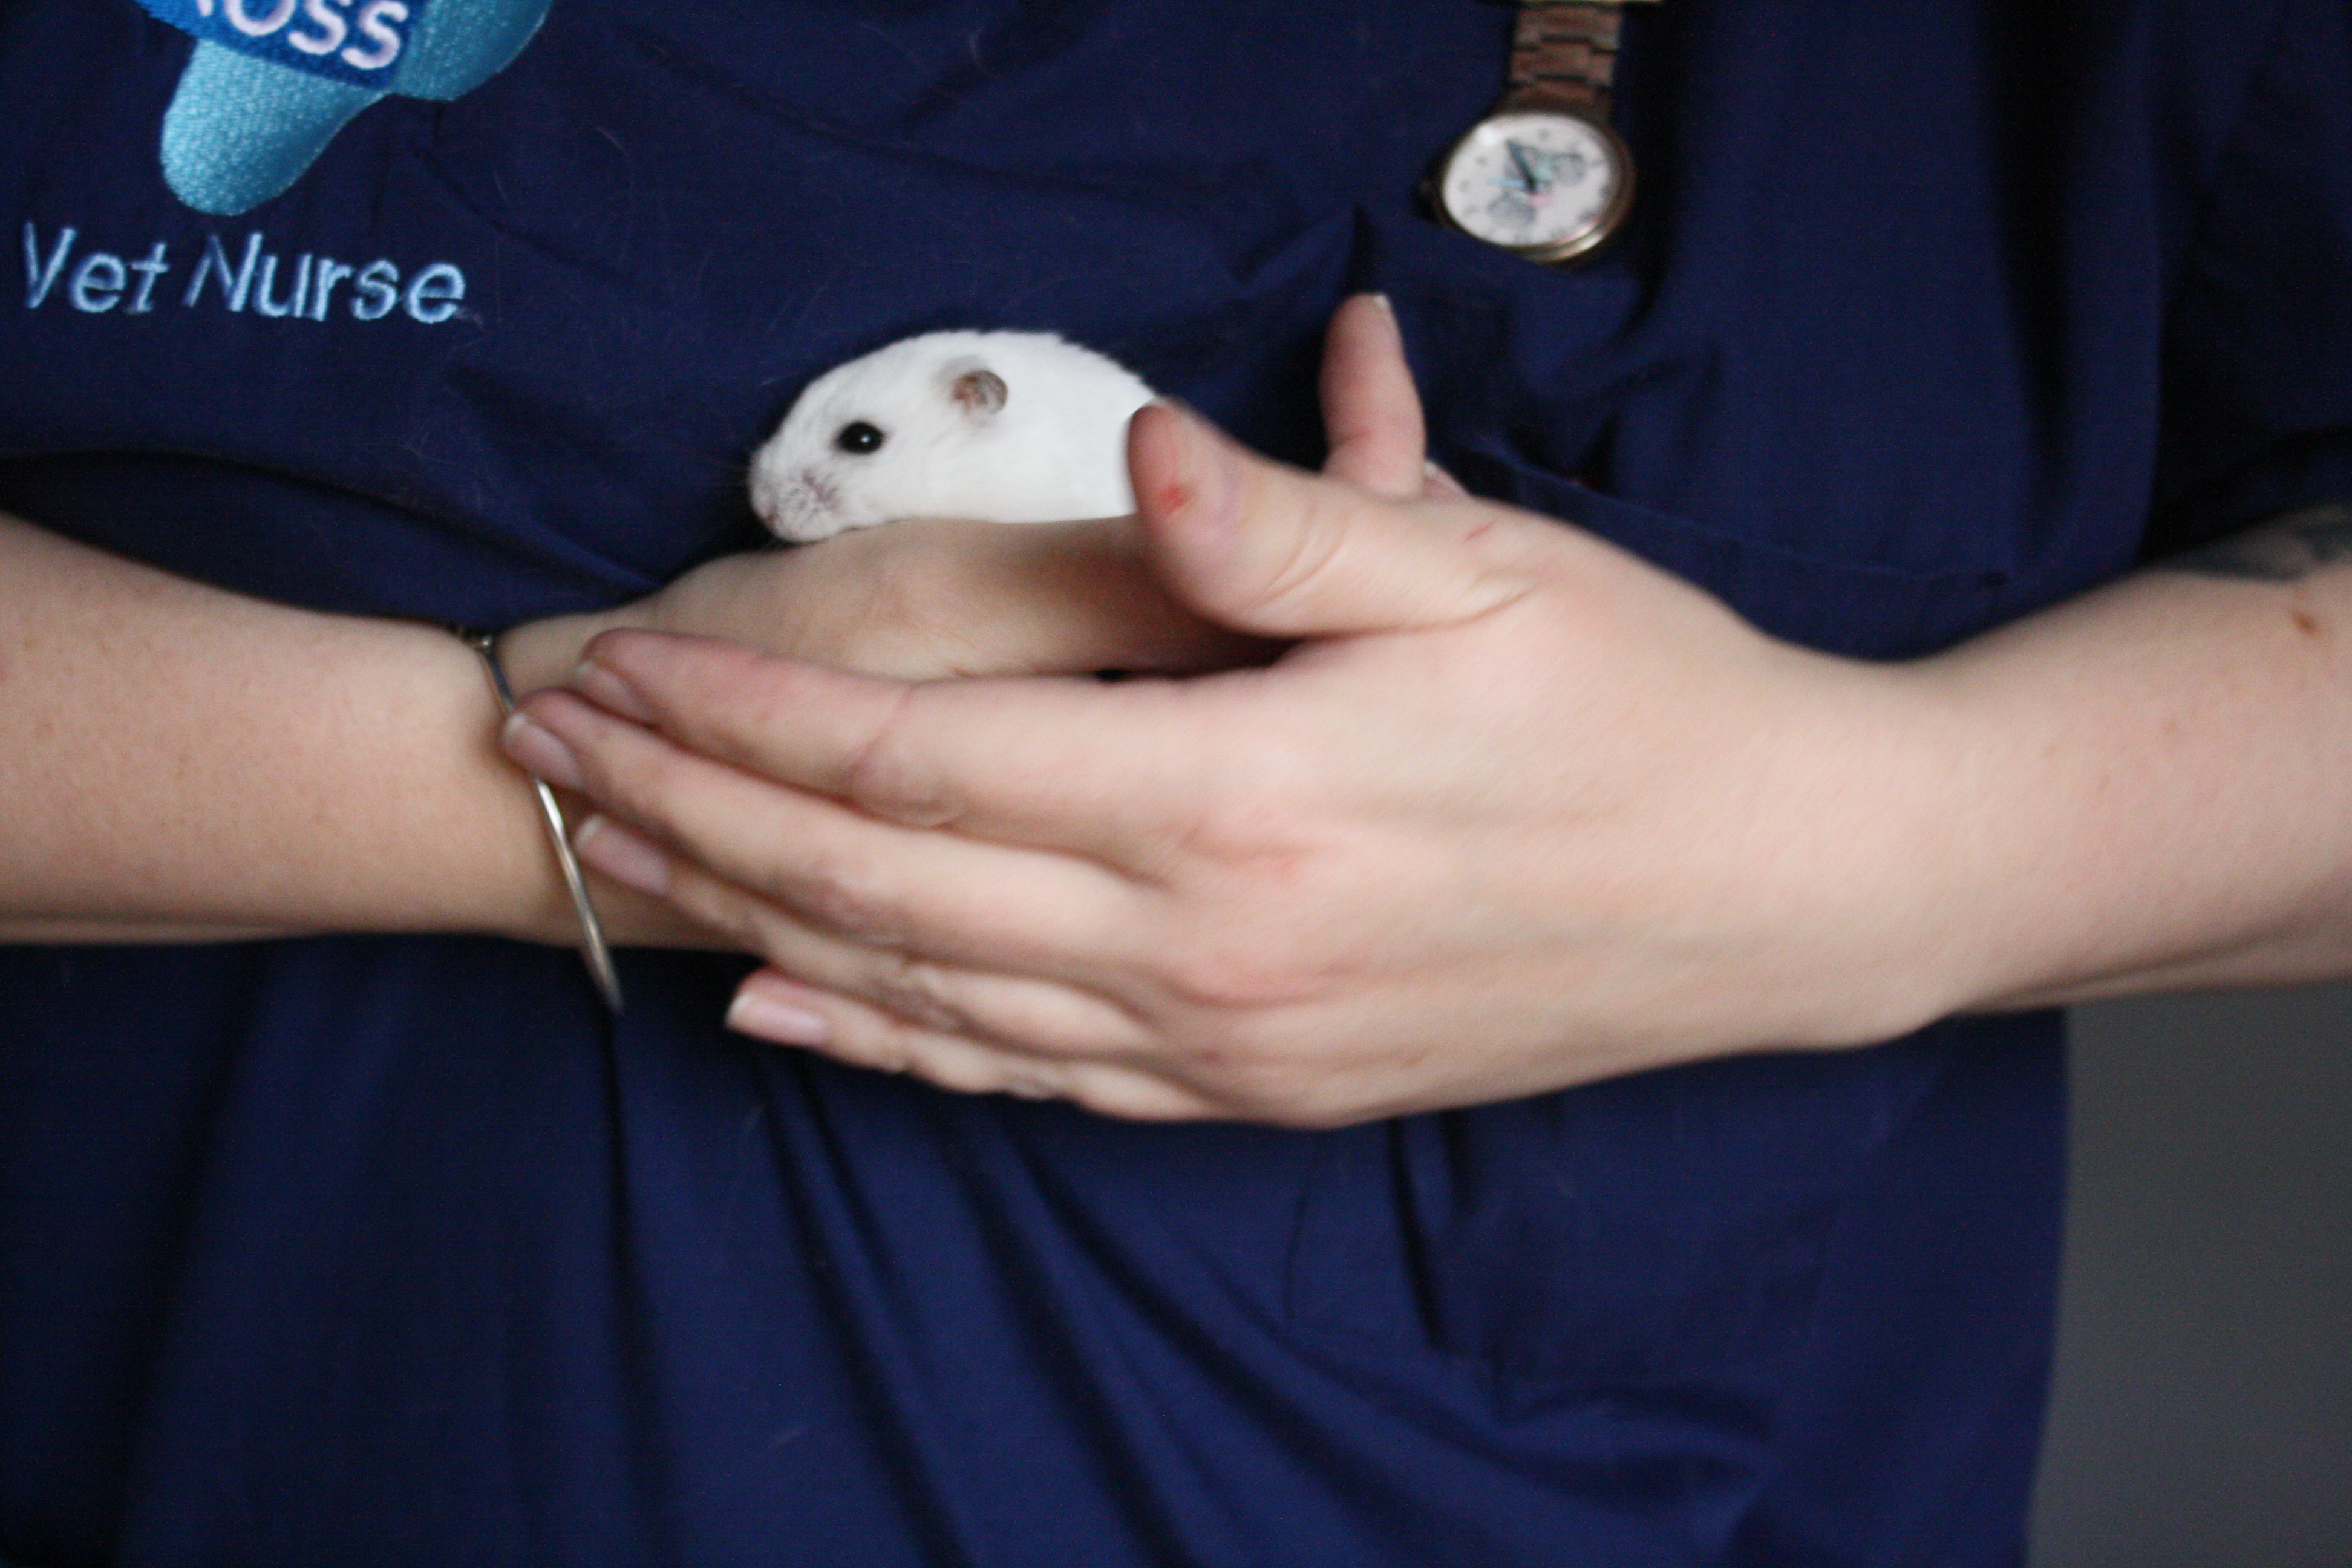 A white dwarf hamster is held by a Blue Cross vet nurse.